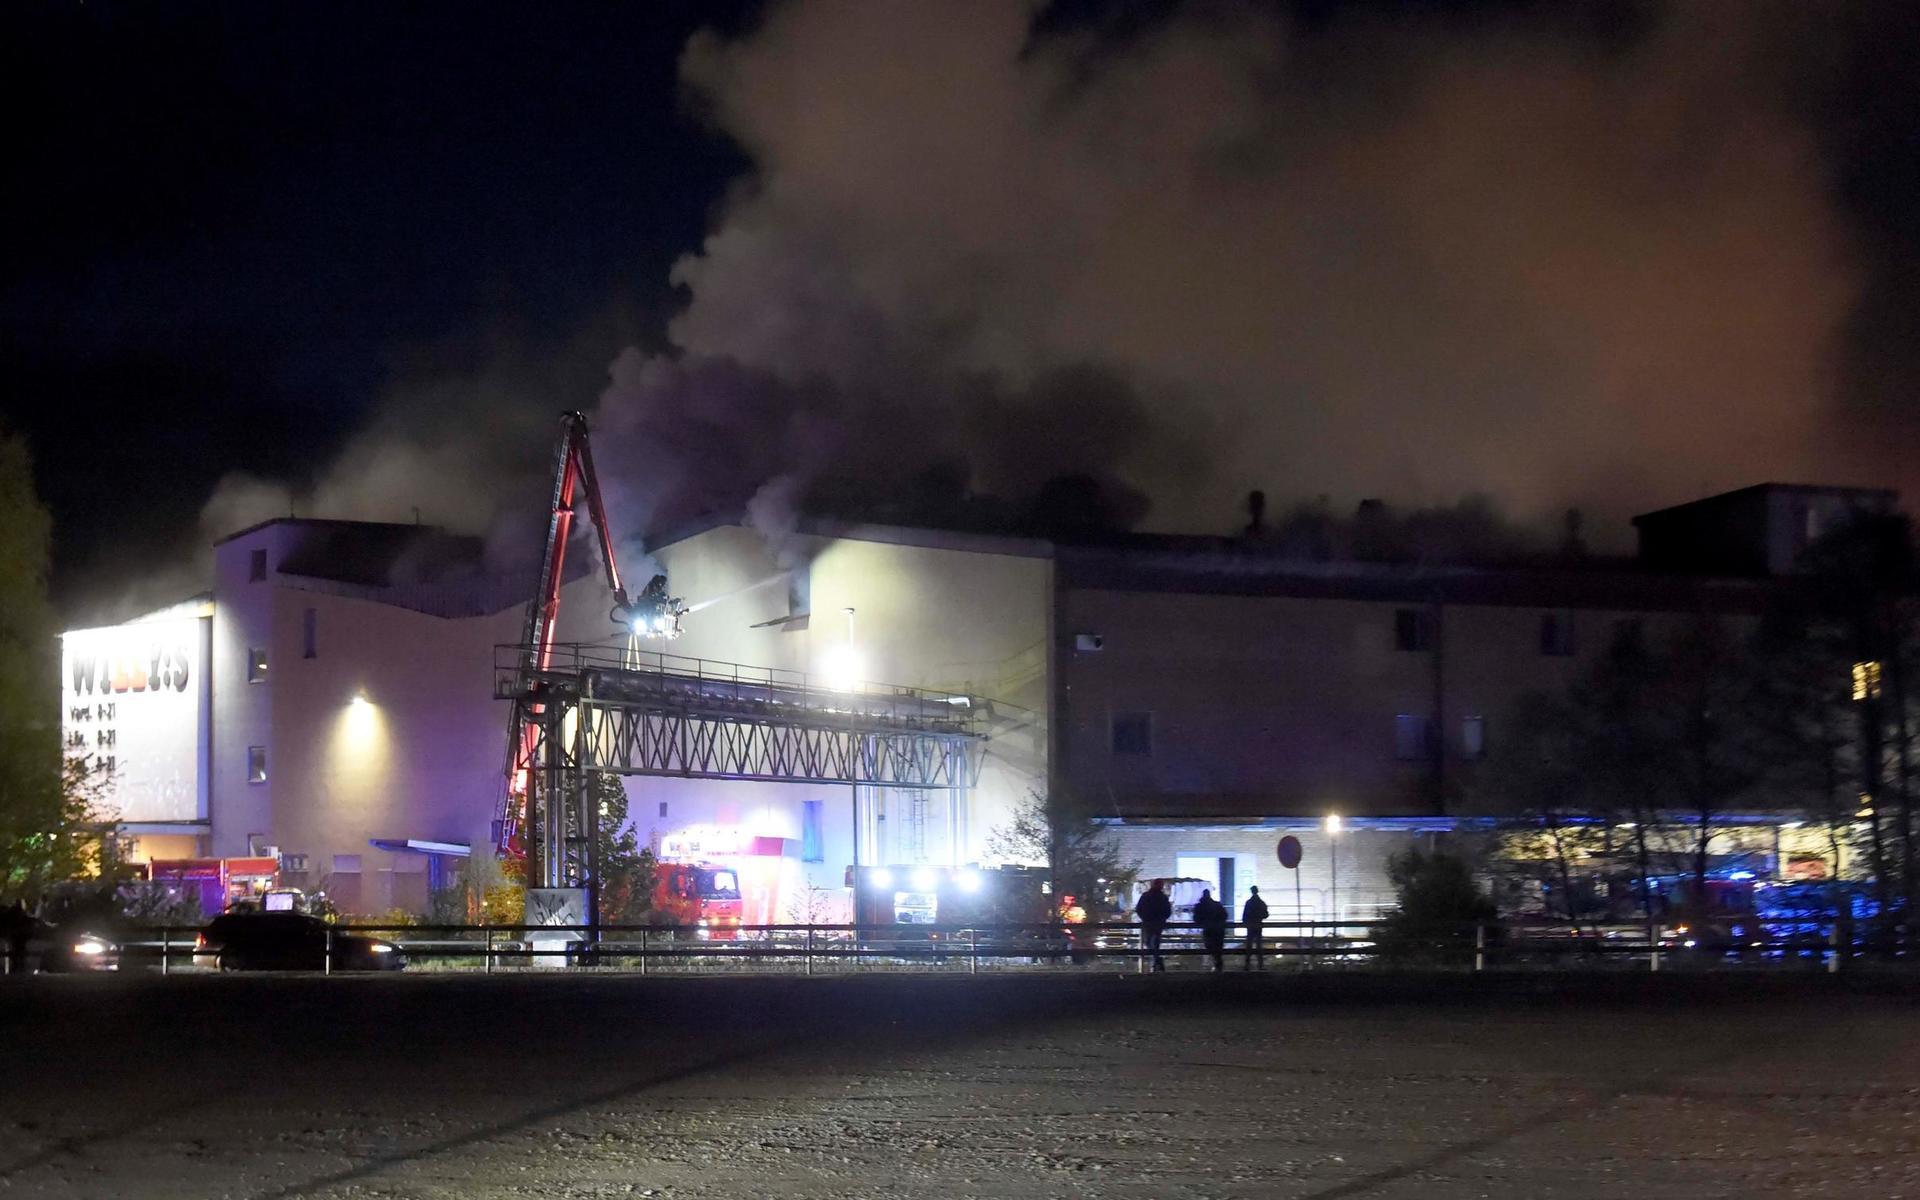 Det var vid 23-tiden på fredagen som larmet kom om branden vid Knalleland.